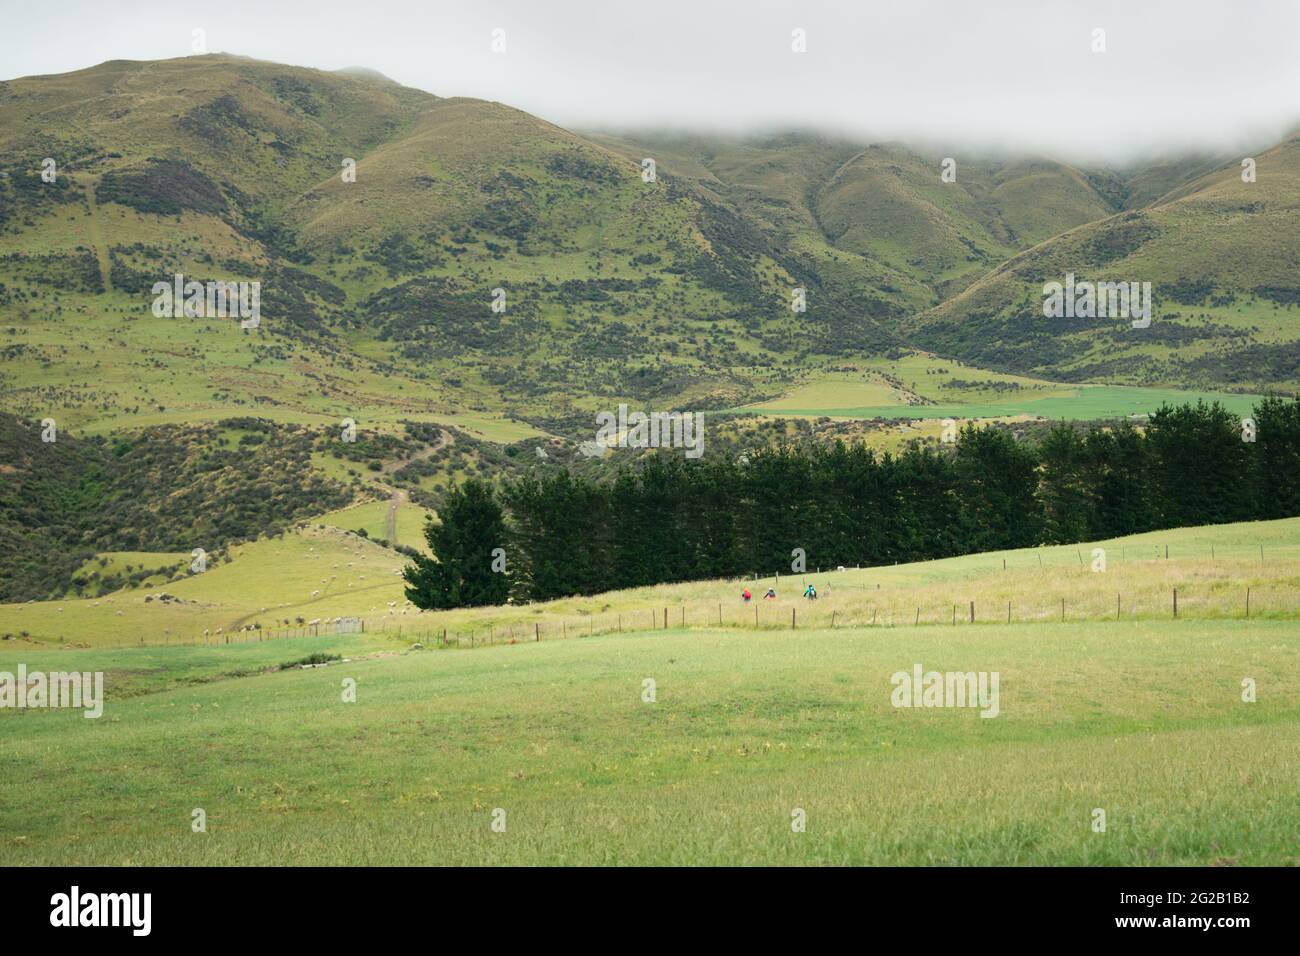 Drei Menschen radeln auf dem Otago Central Rail Trail zwischen den riesigen grünen Hügeln mit weidenden Schafen, die das Ausmaß der Menschen in der Landschaft zeigen. Stockfoto